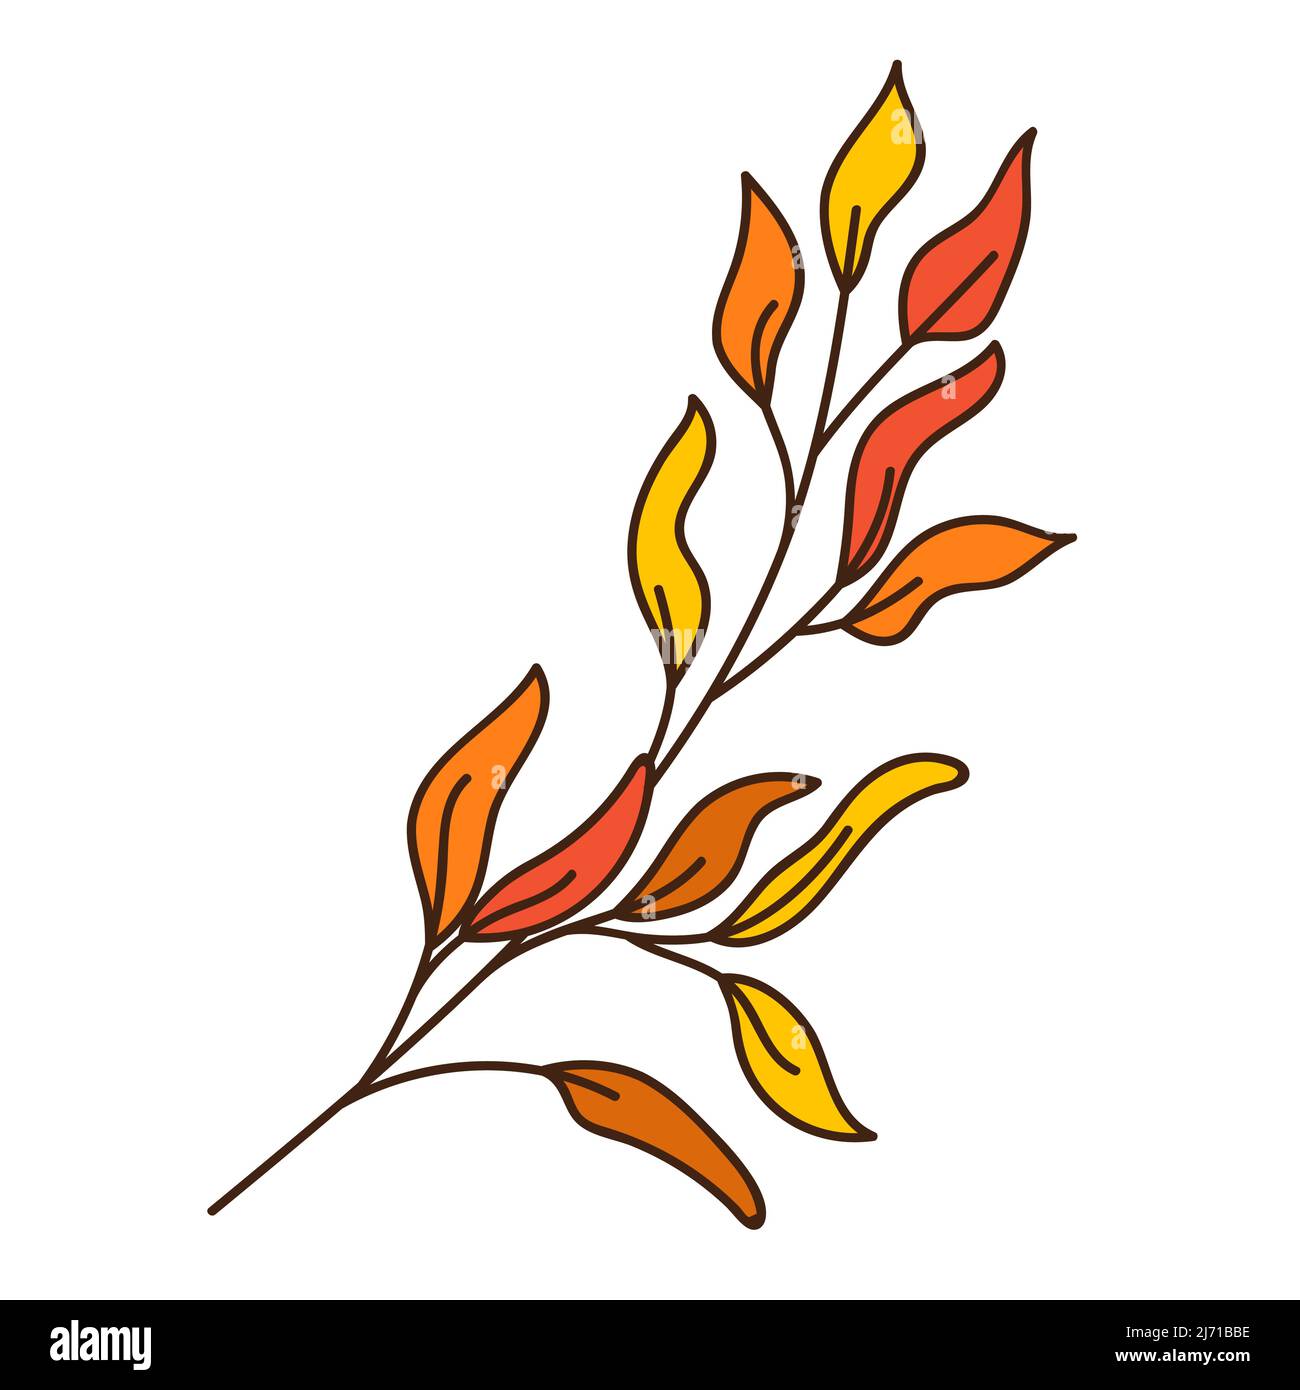 Ramoscello astratto rosso e giallo con foglie. Una lama di erba. Ora di autunno. Botanica, elemento di disegno vegetale con contorno. Doodle, disegnato a mano. Design piatto Illustrazione Vettoriale